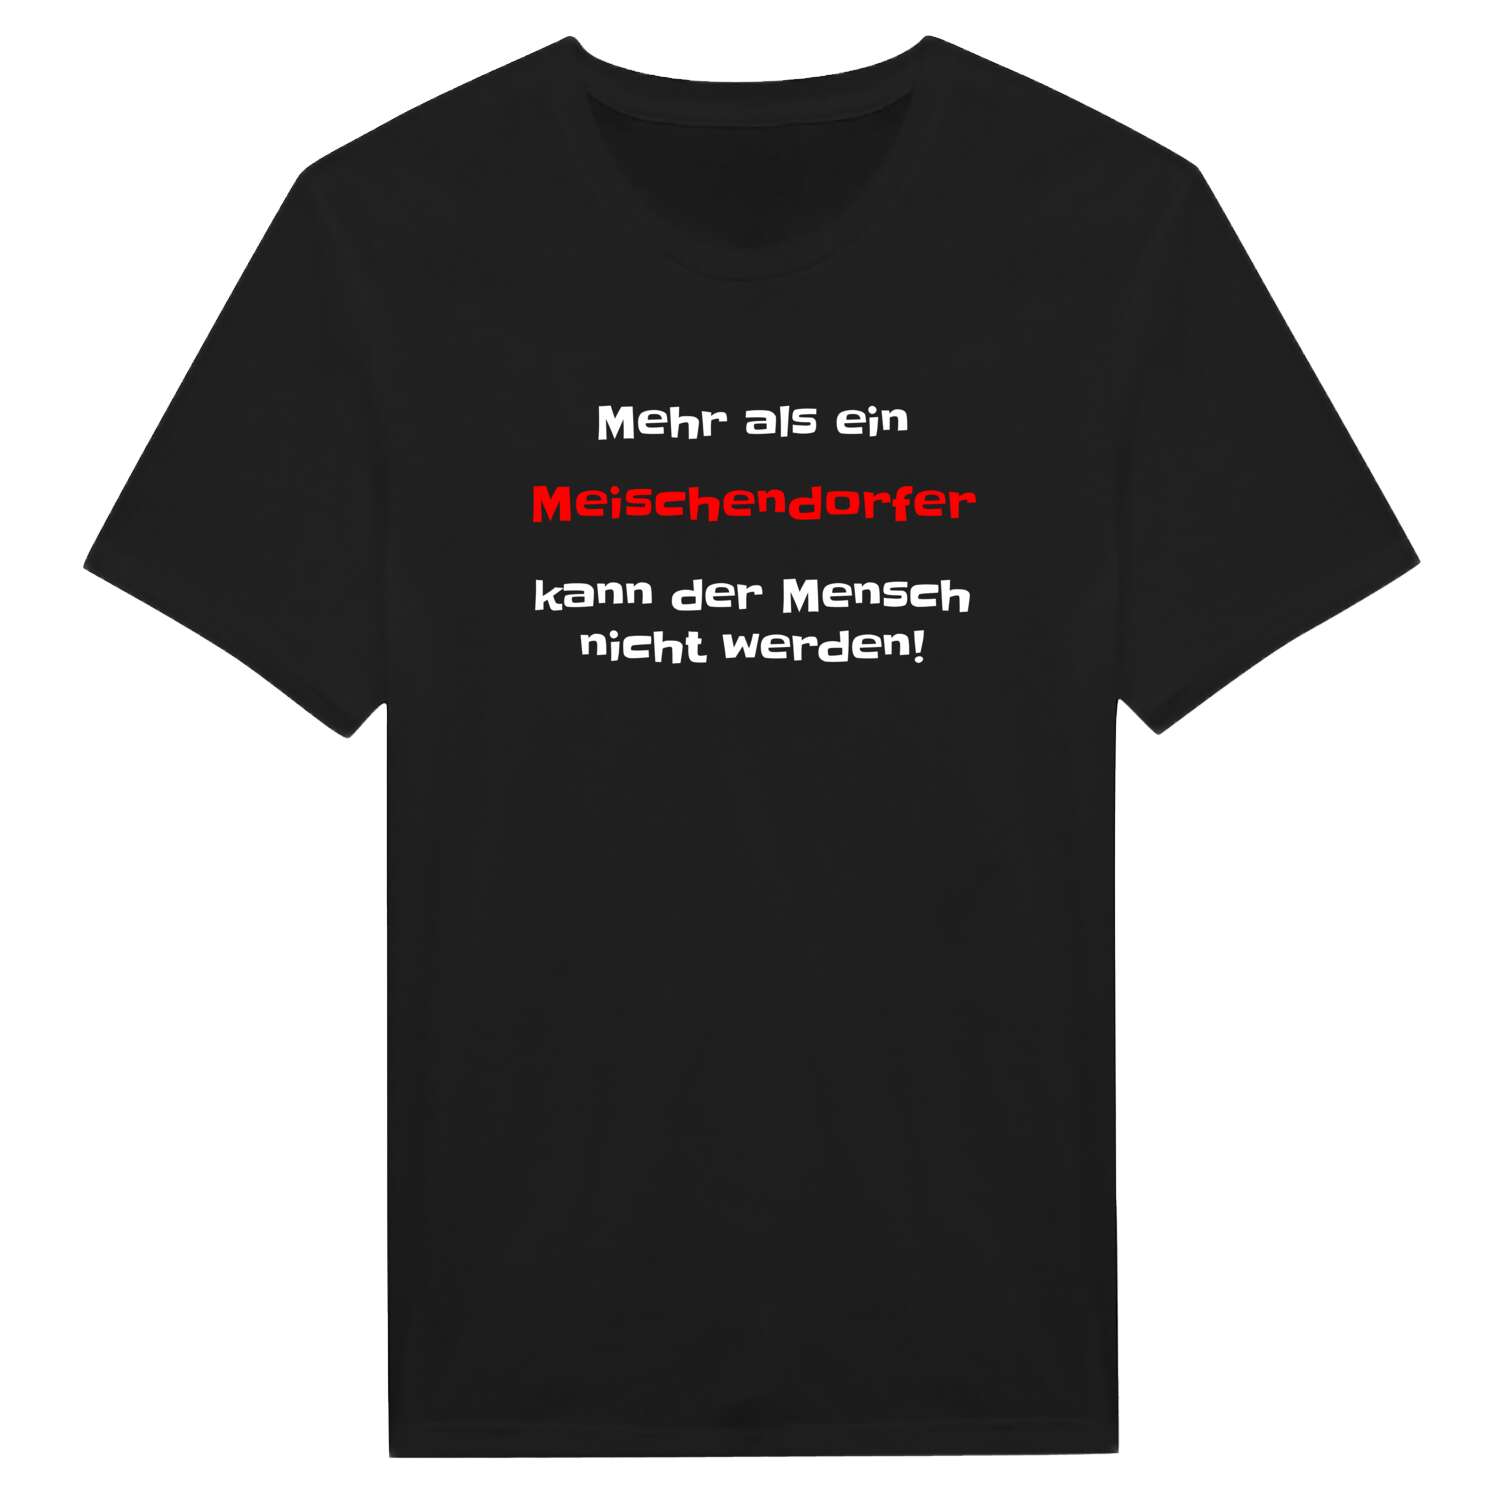 Meischendorf T-Shirt »Mehr als ein«